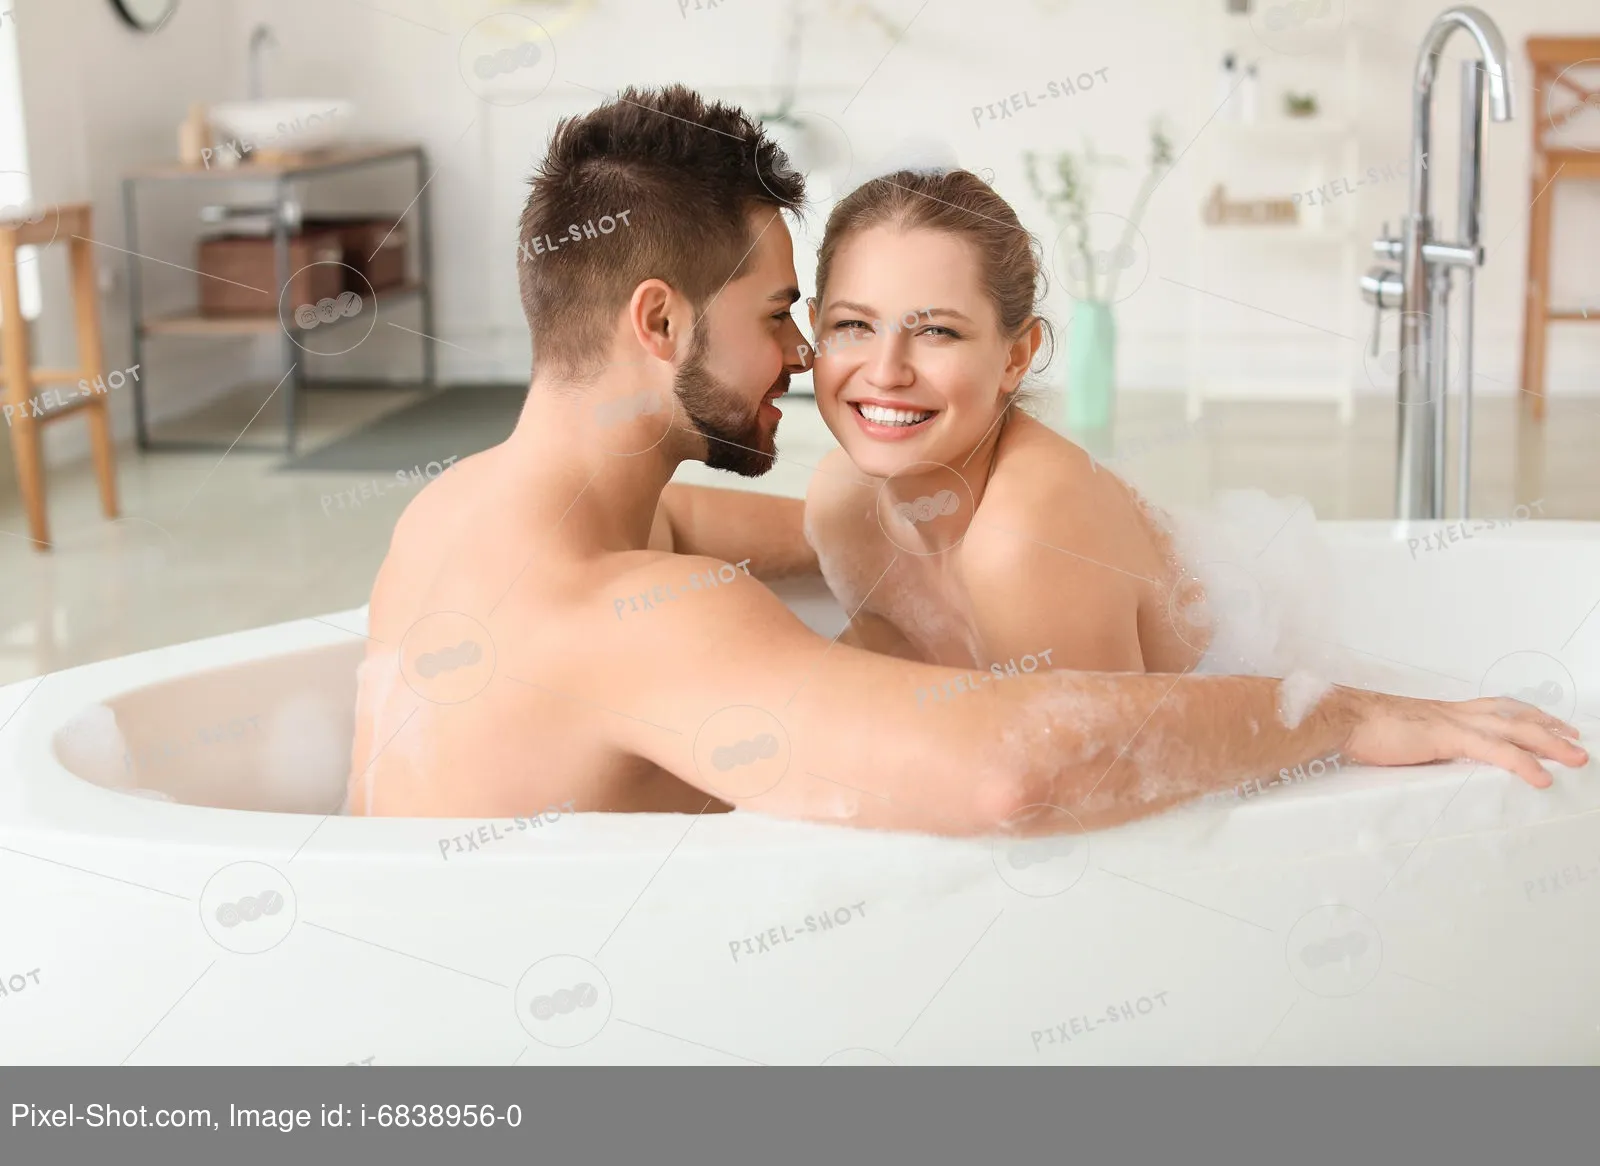 Счастливая молодая пара принимает ванну вместе :: Стоковая фотография :: Pixel-Shot Studio